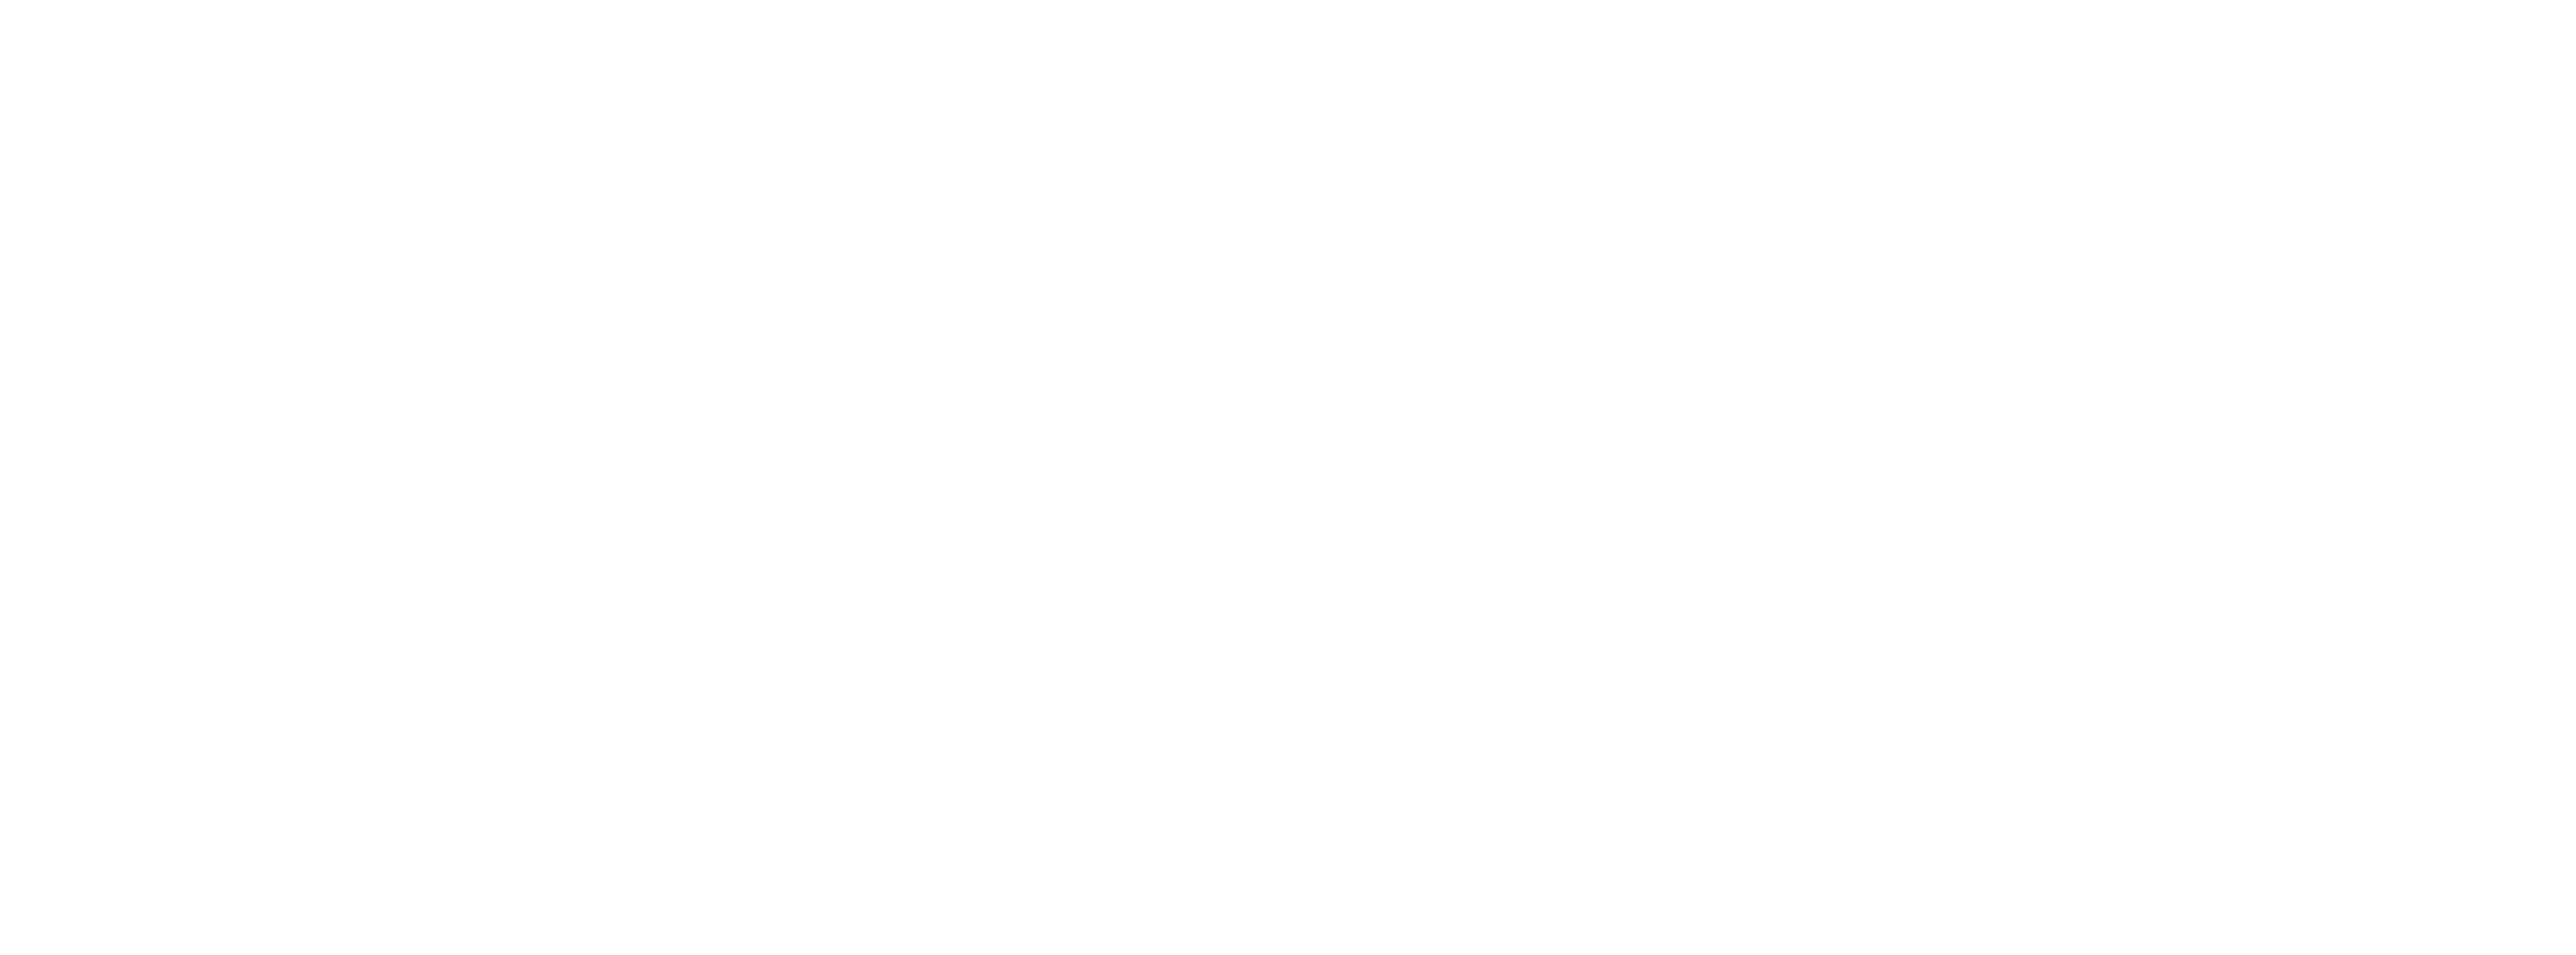 Vassar Student Association